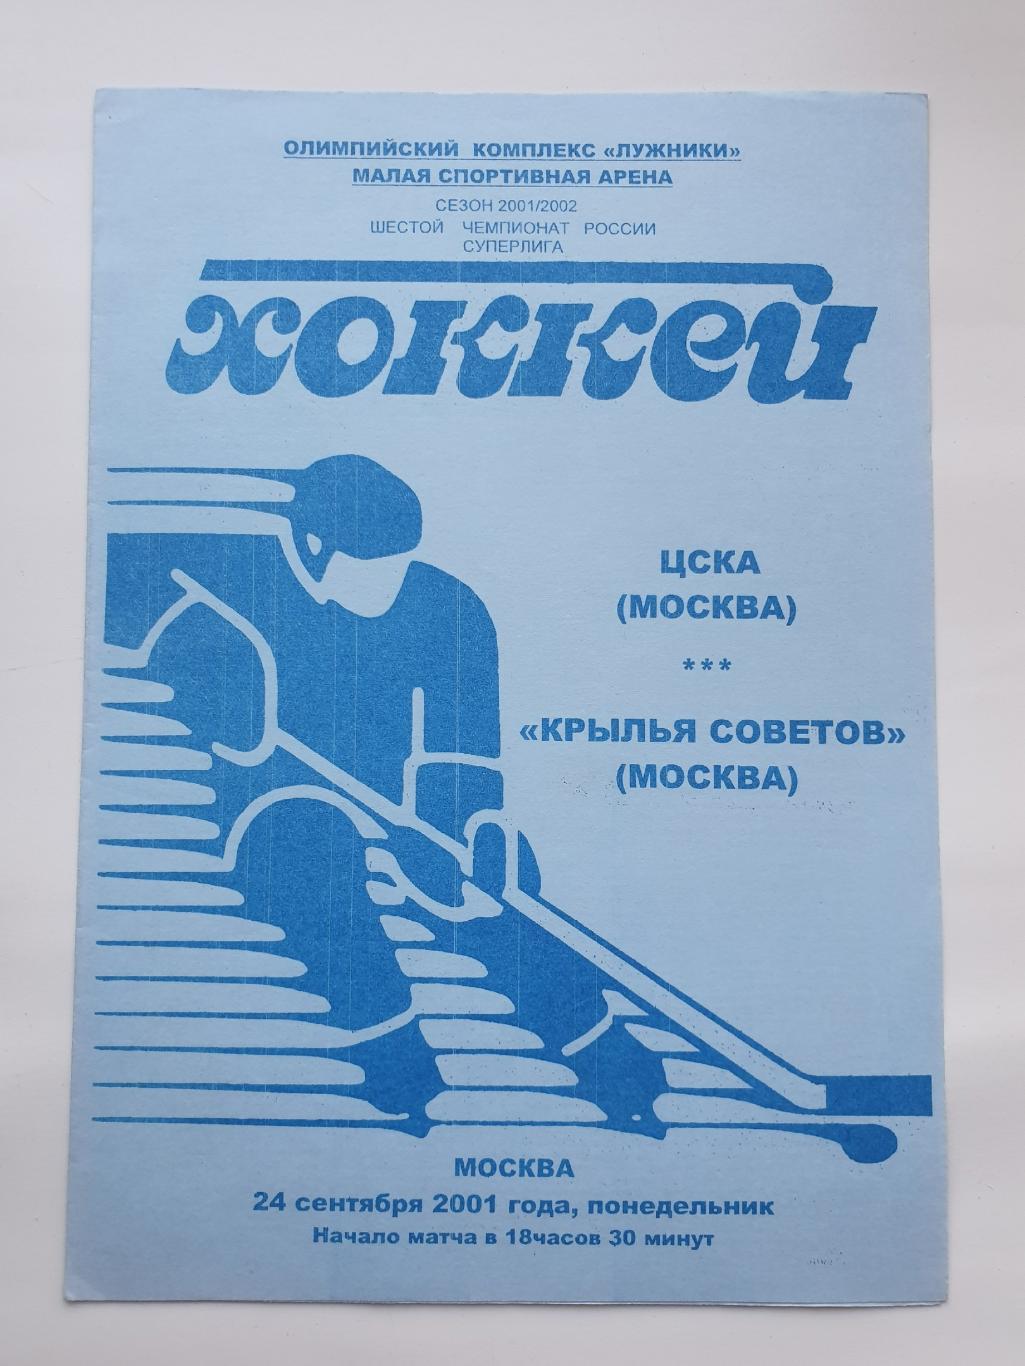 ЦСКА Москва - Крылья Советов Москва 24 сентября 2001